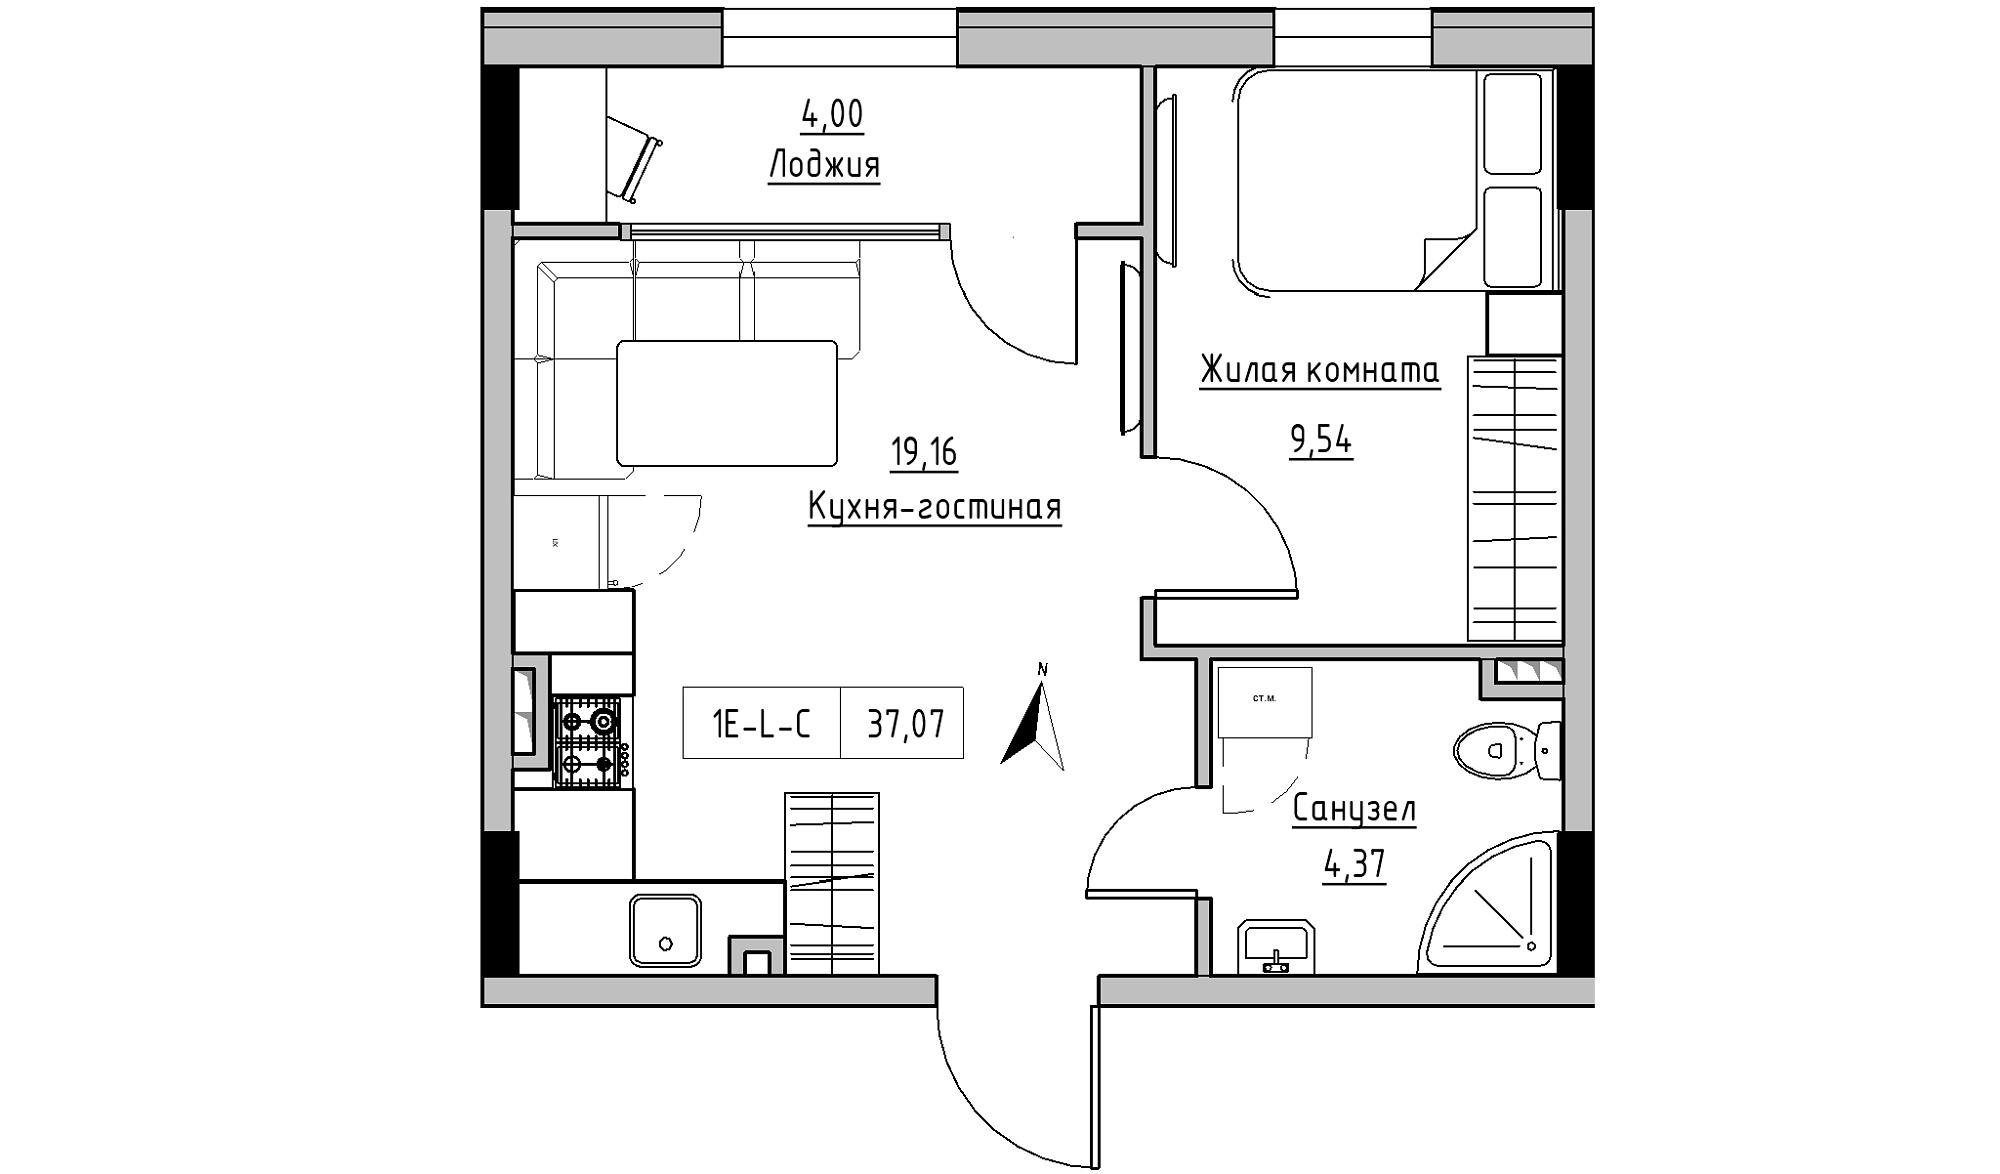 Планування 1-к квартира площею 37.07м2, KS-025-02/0008.